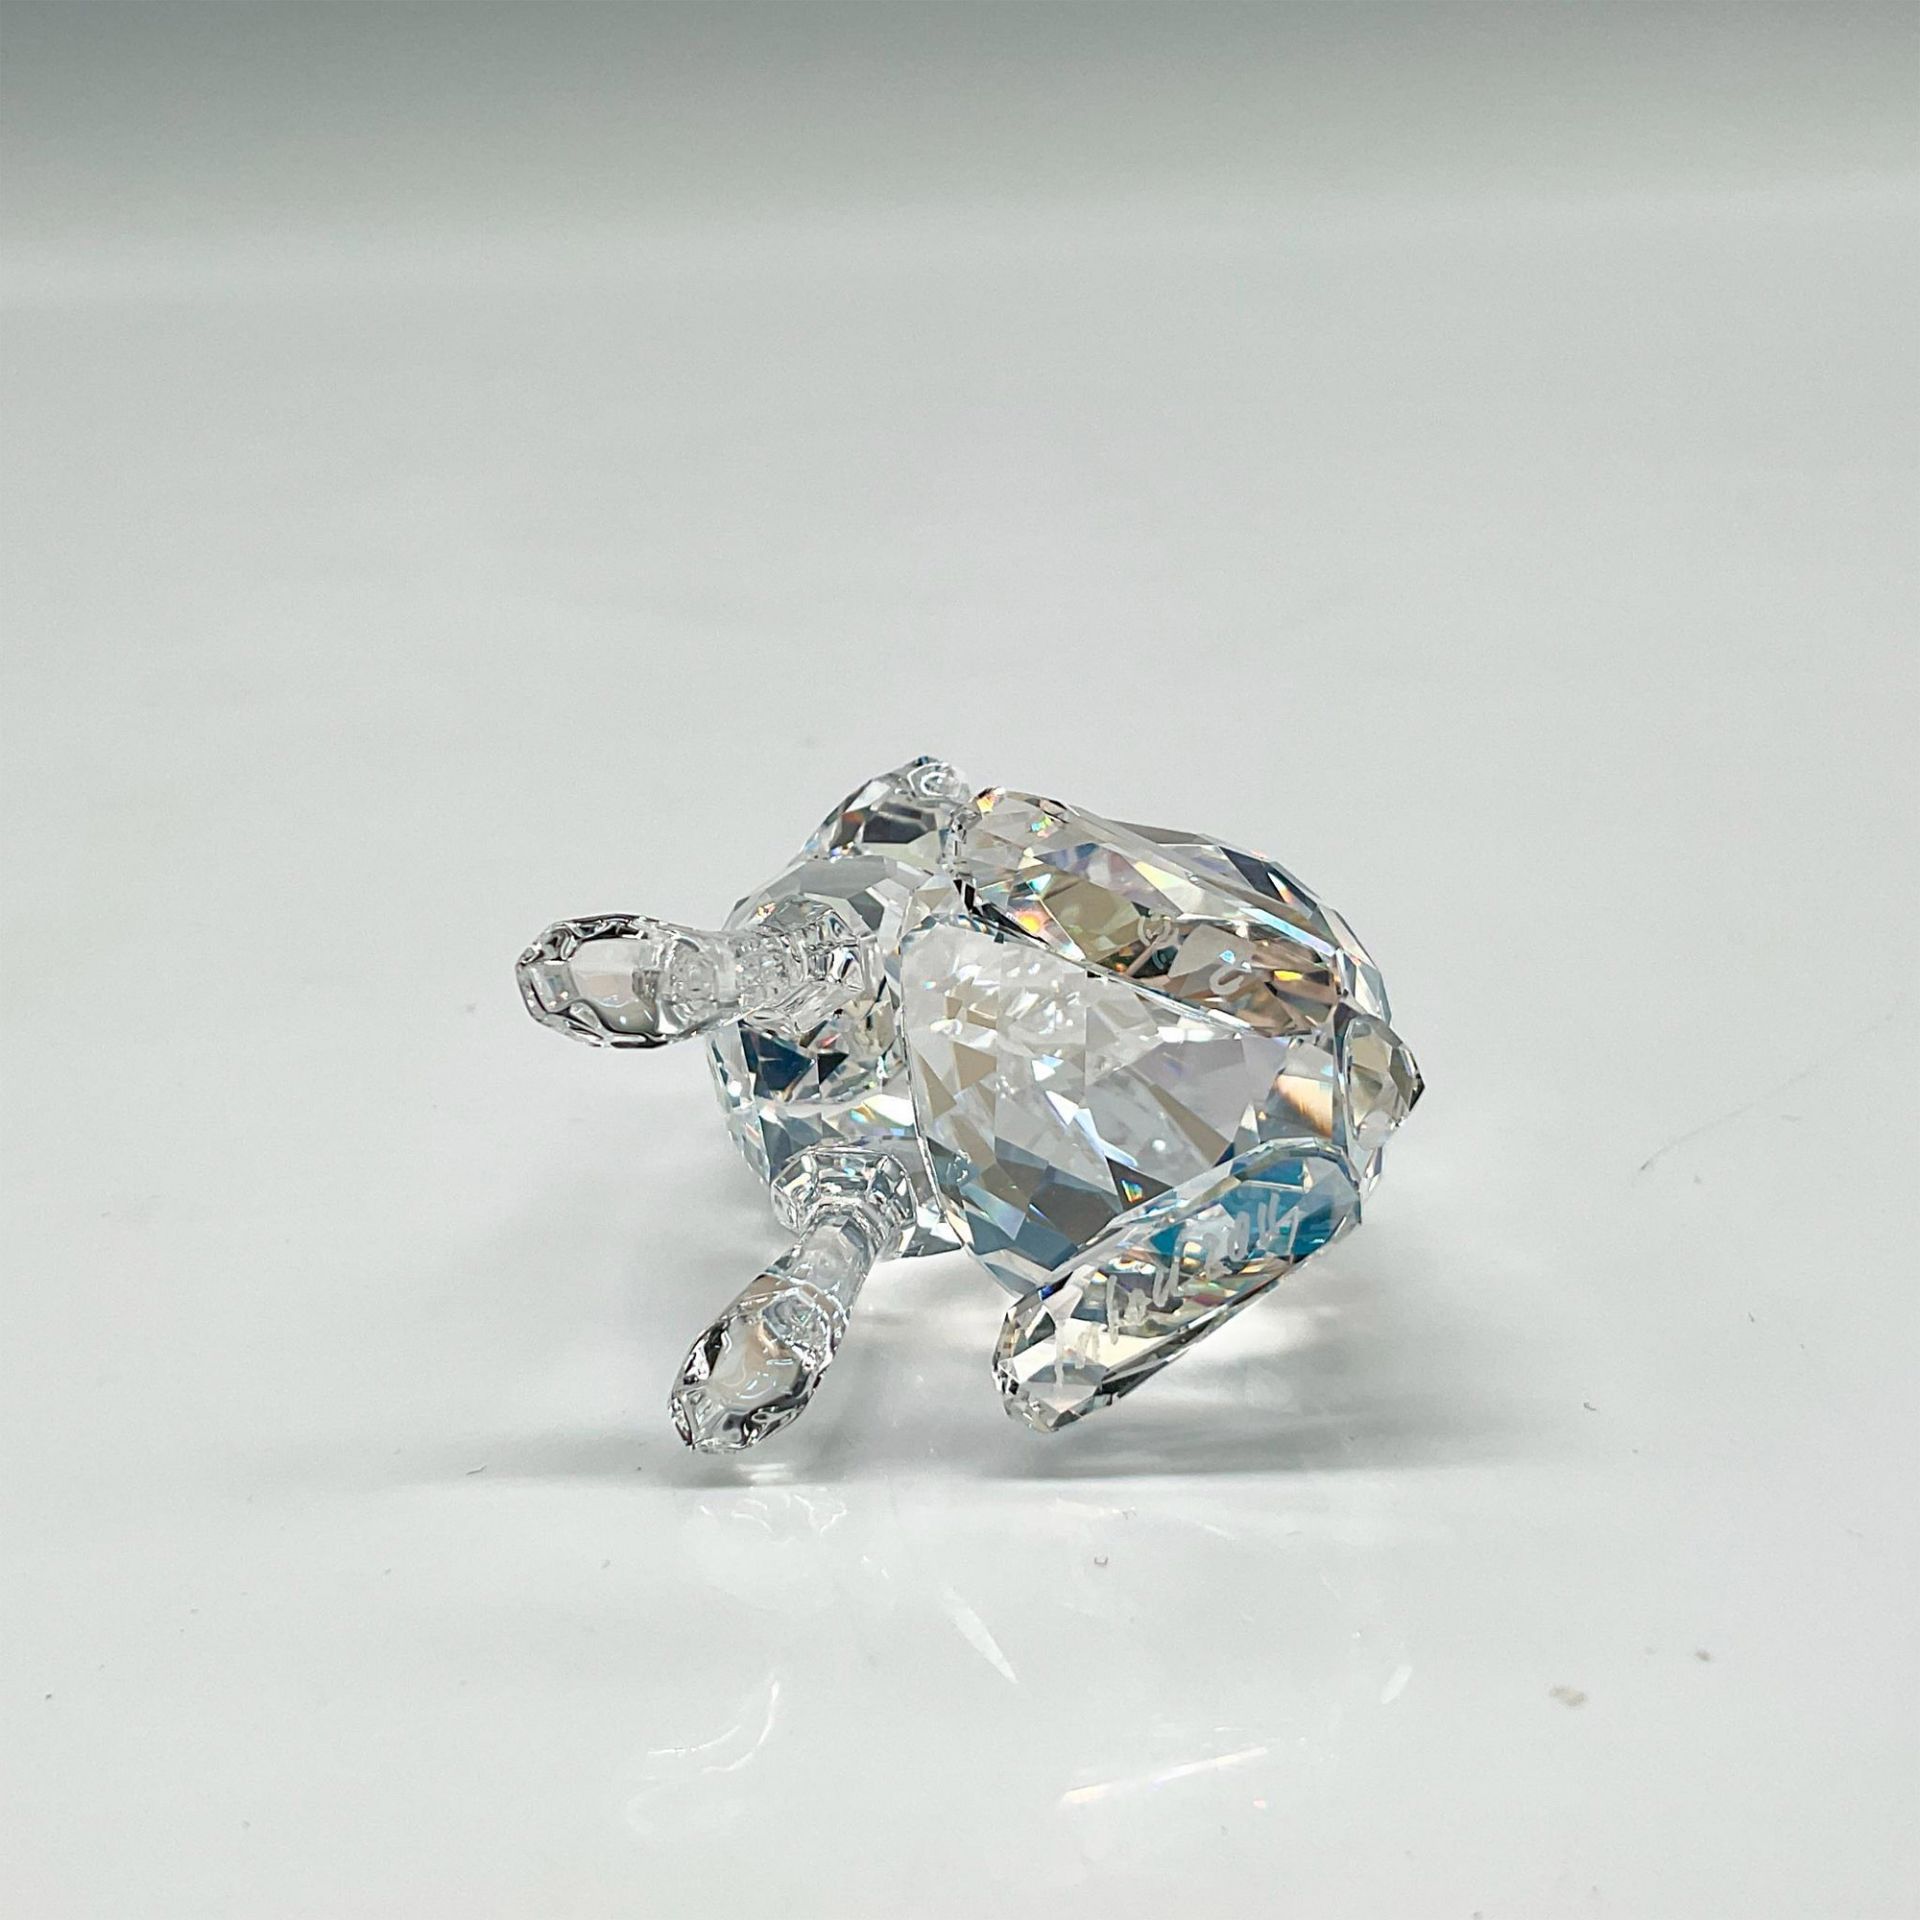 Swarovski Crystal Figurine, Artic Hare, Signed - Bild 3 aus 4